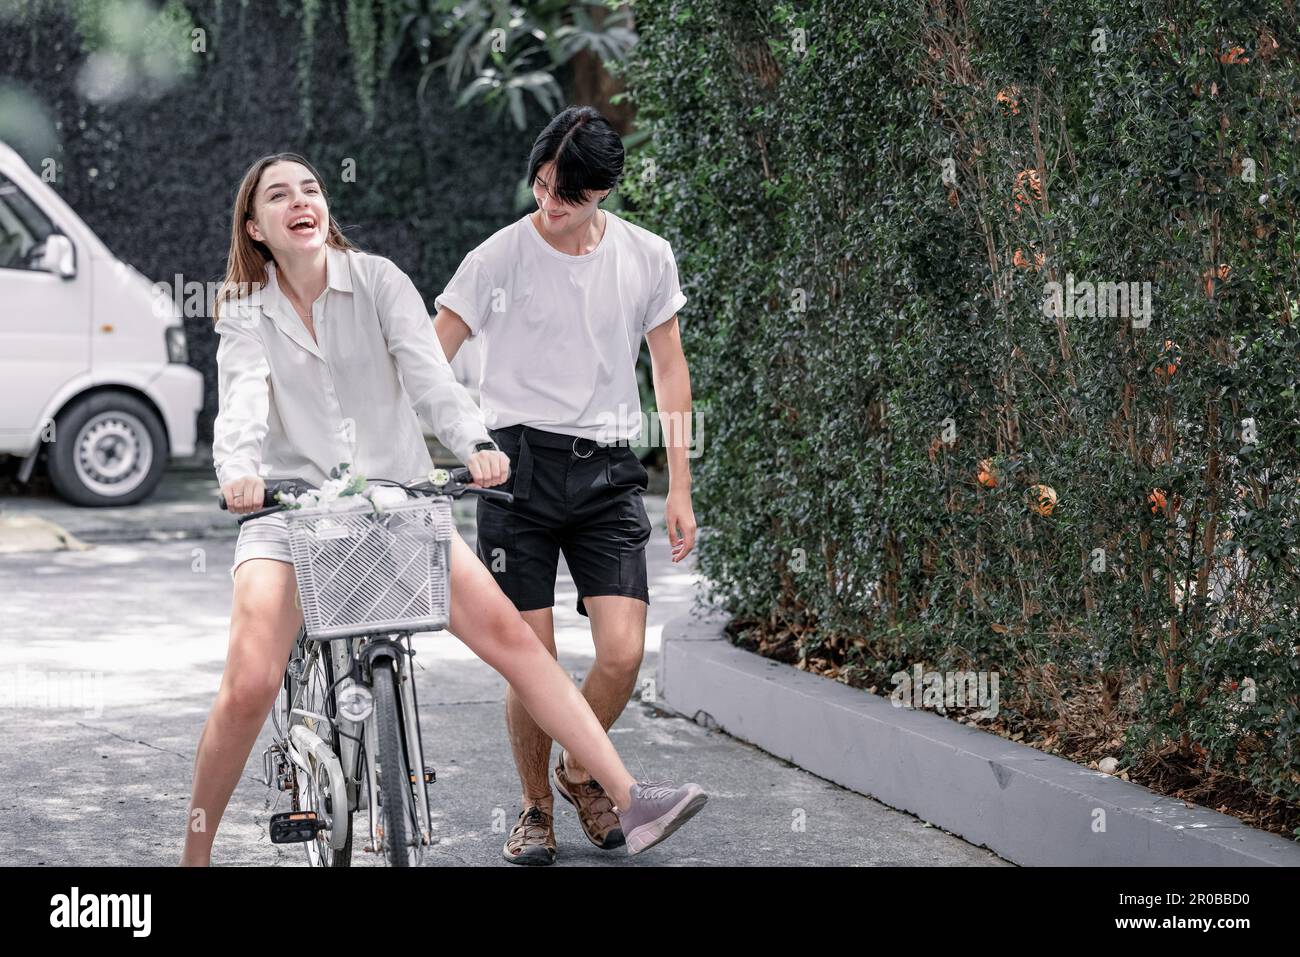 Die zukünftigen Lebenspartner fahren gemeinsam mit ihren Fahrrädern. Die romantische Liebe, Fürsorge und Hingabe eines jungen erwachsenen Paares. Lange Assoziation und gegenseitige Untergebene Stockfoto